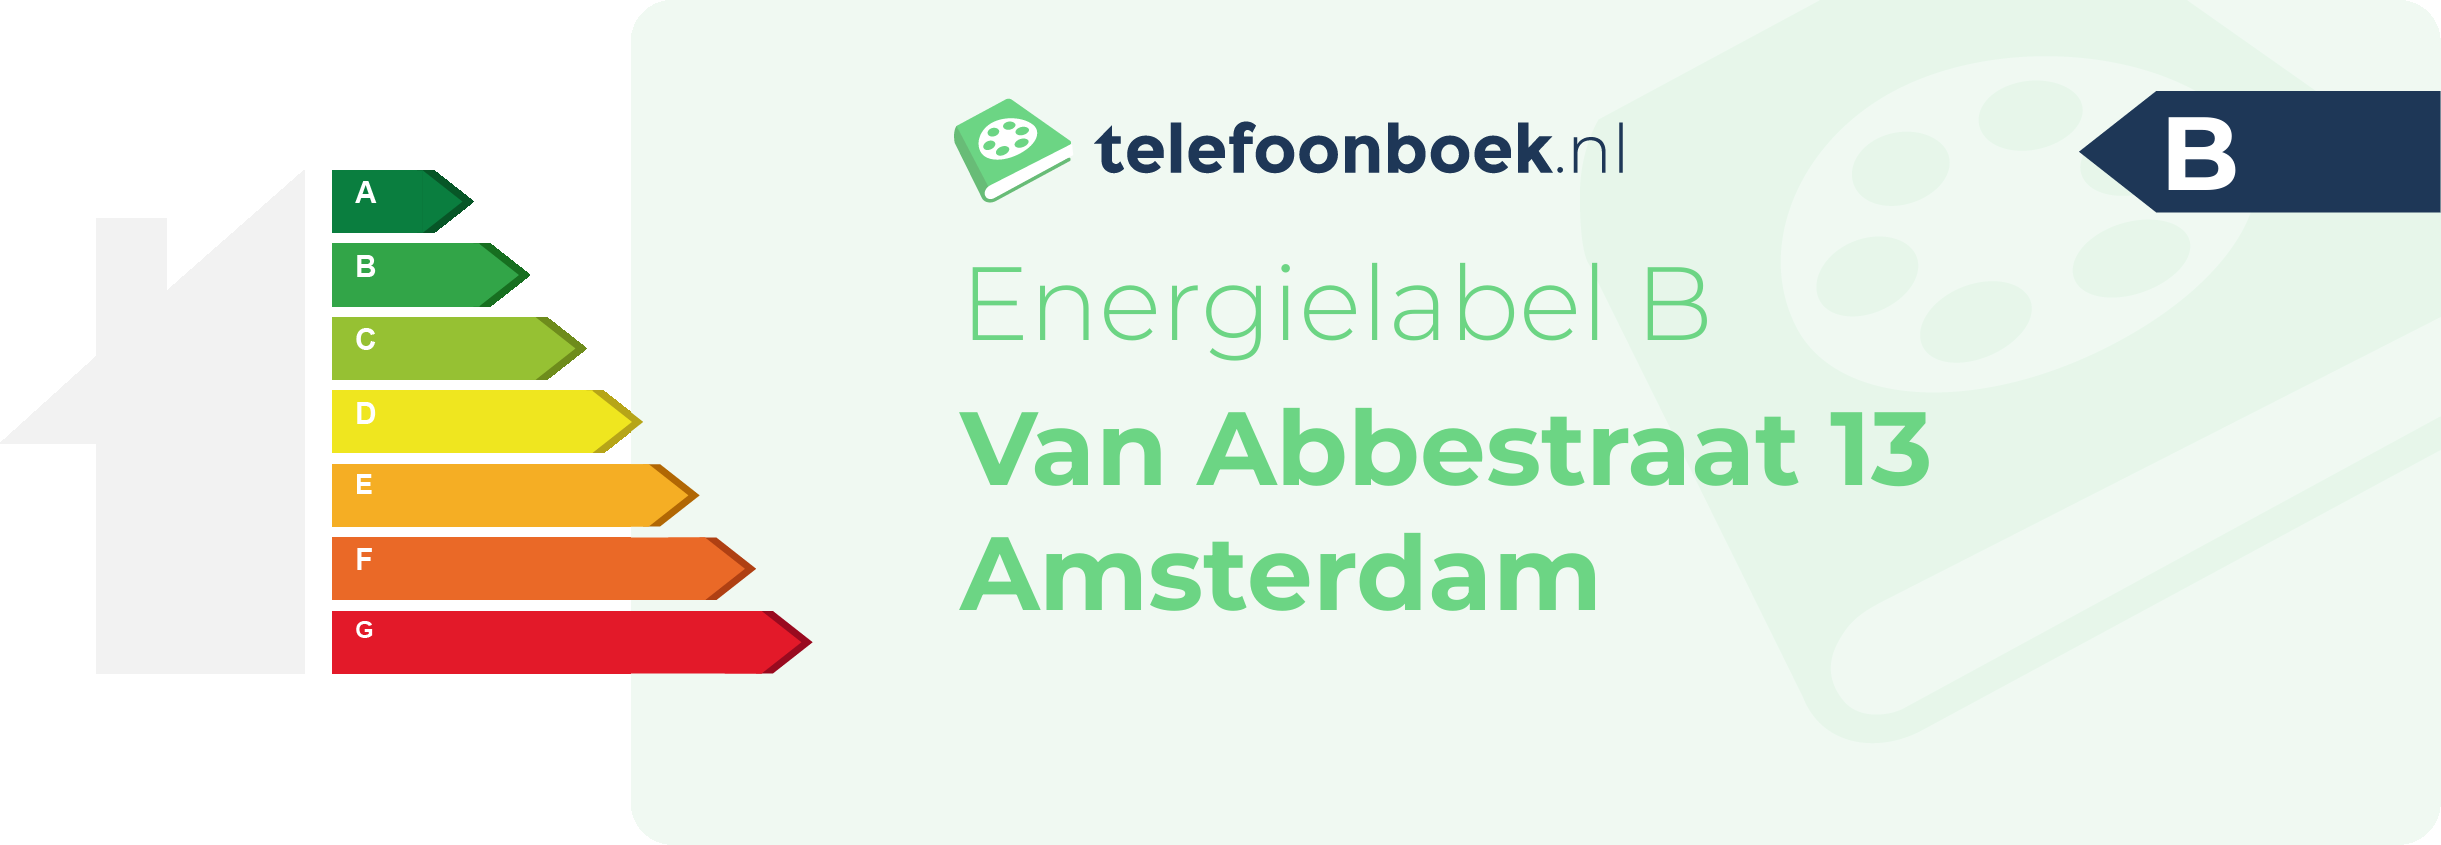 Energielabel Van Abbestraat 13 Amsterdam